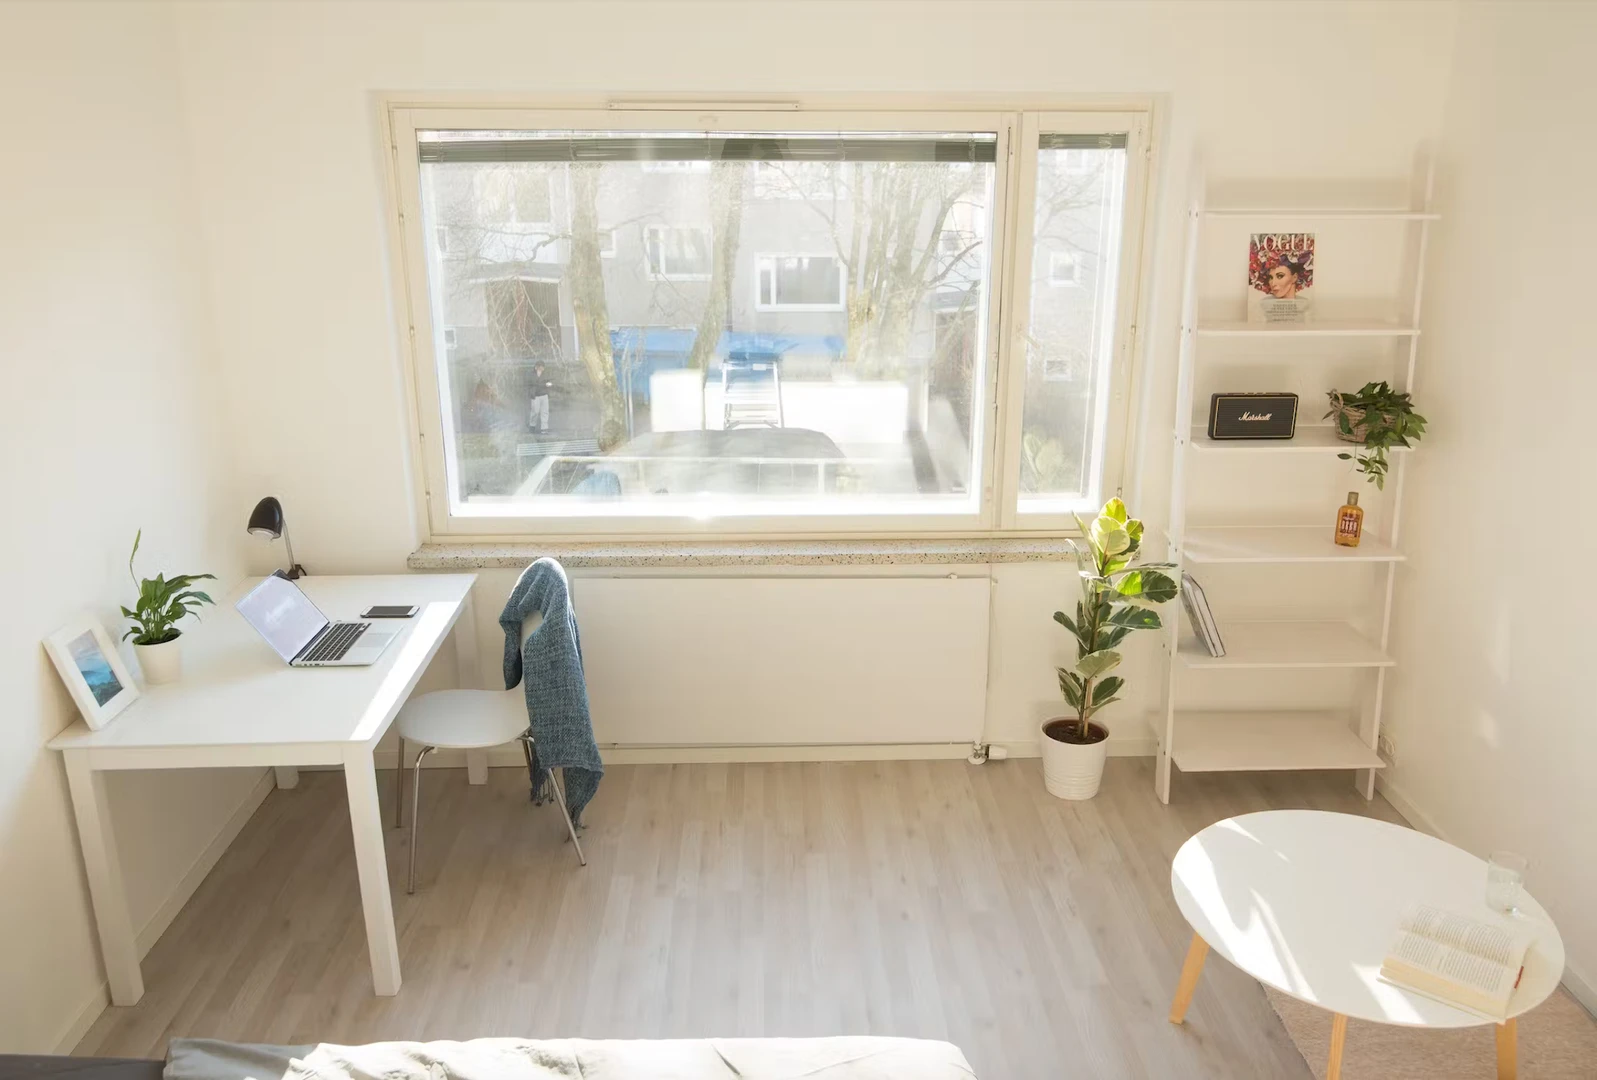 Chambre à louer dans un appartement en colocation à Helsinki